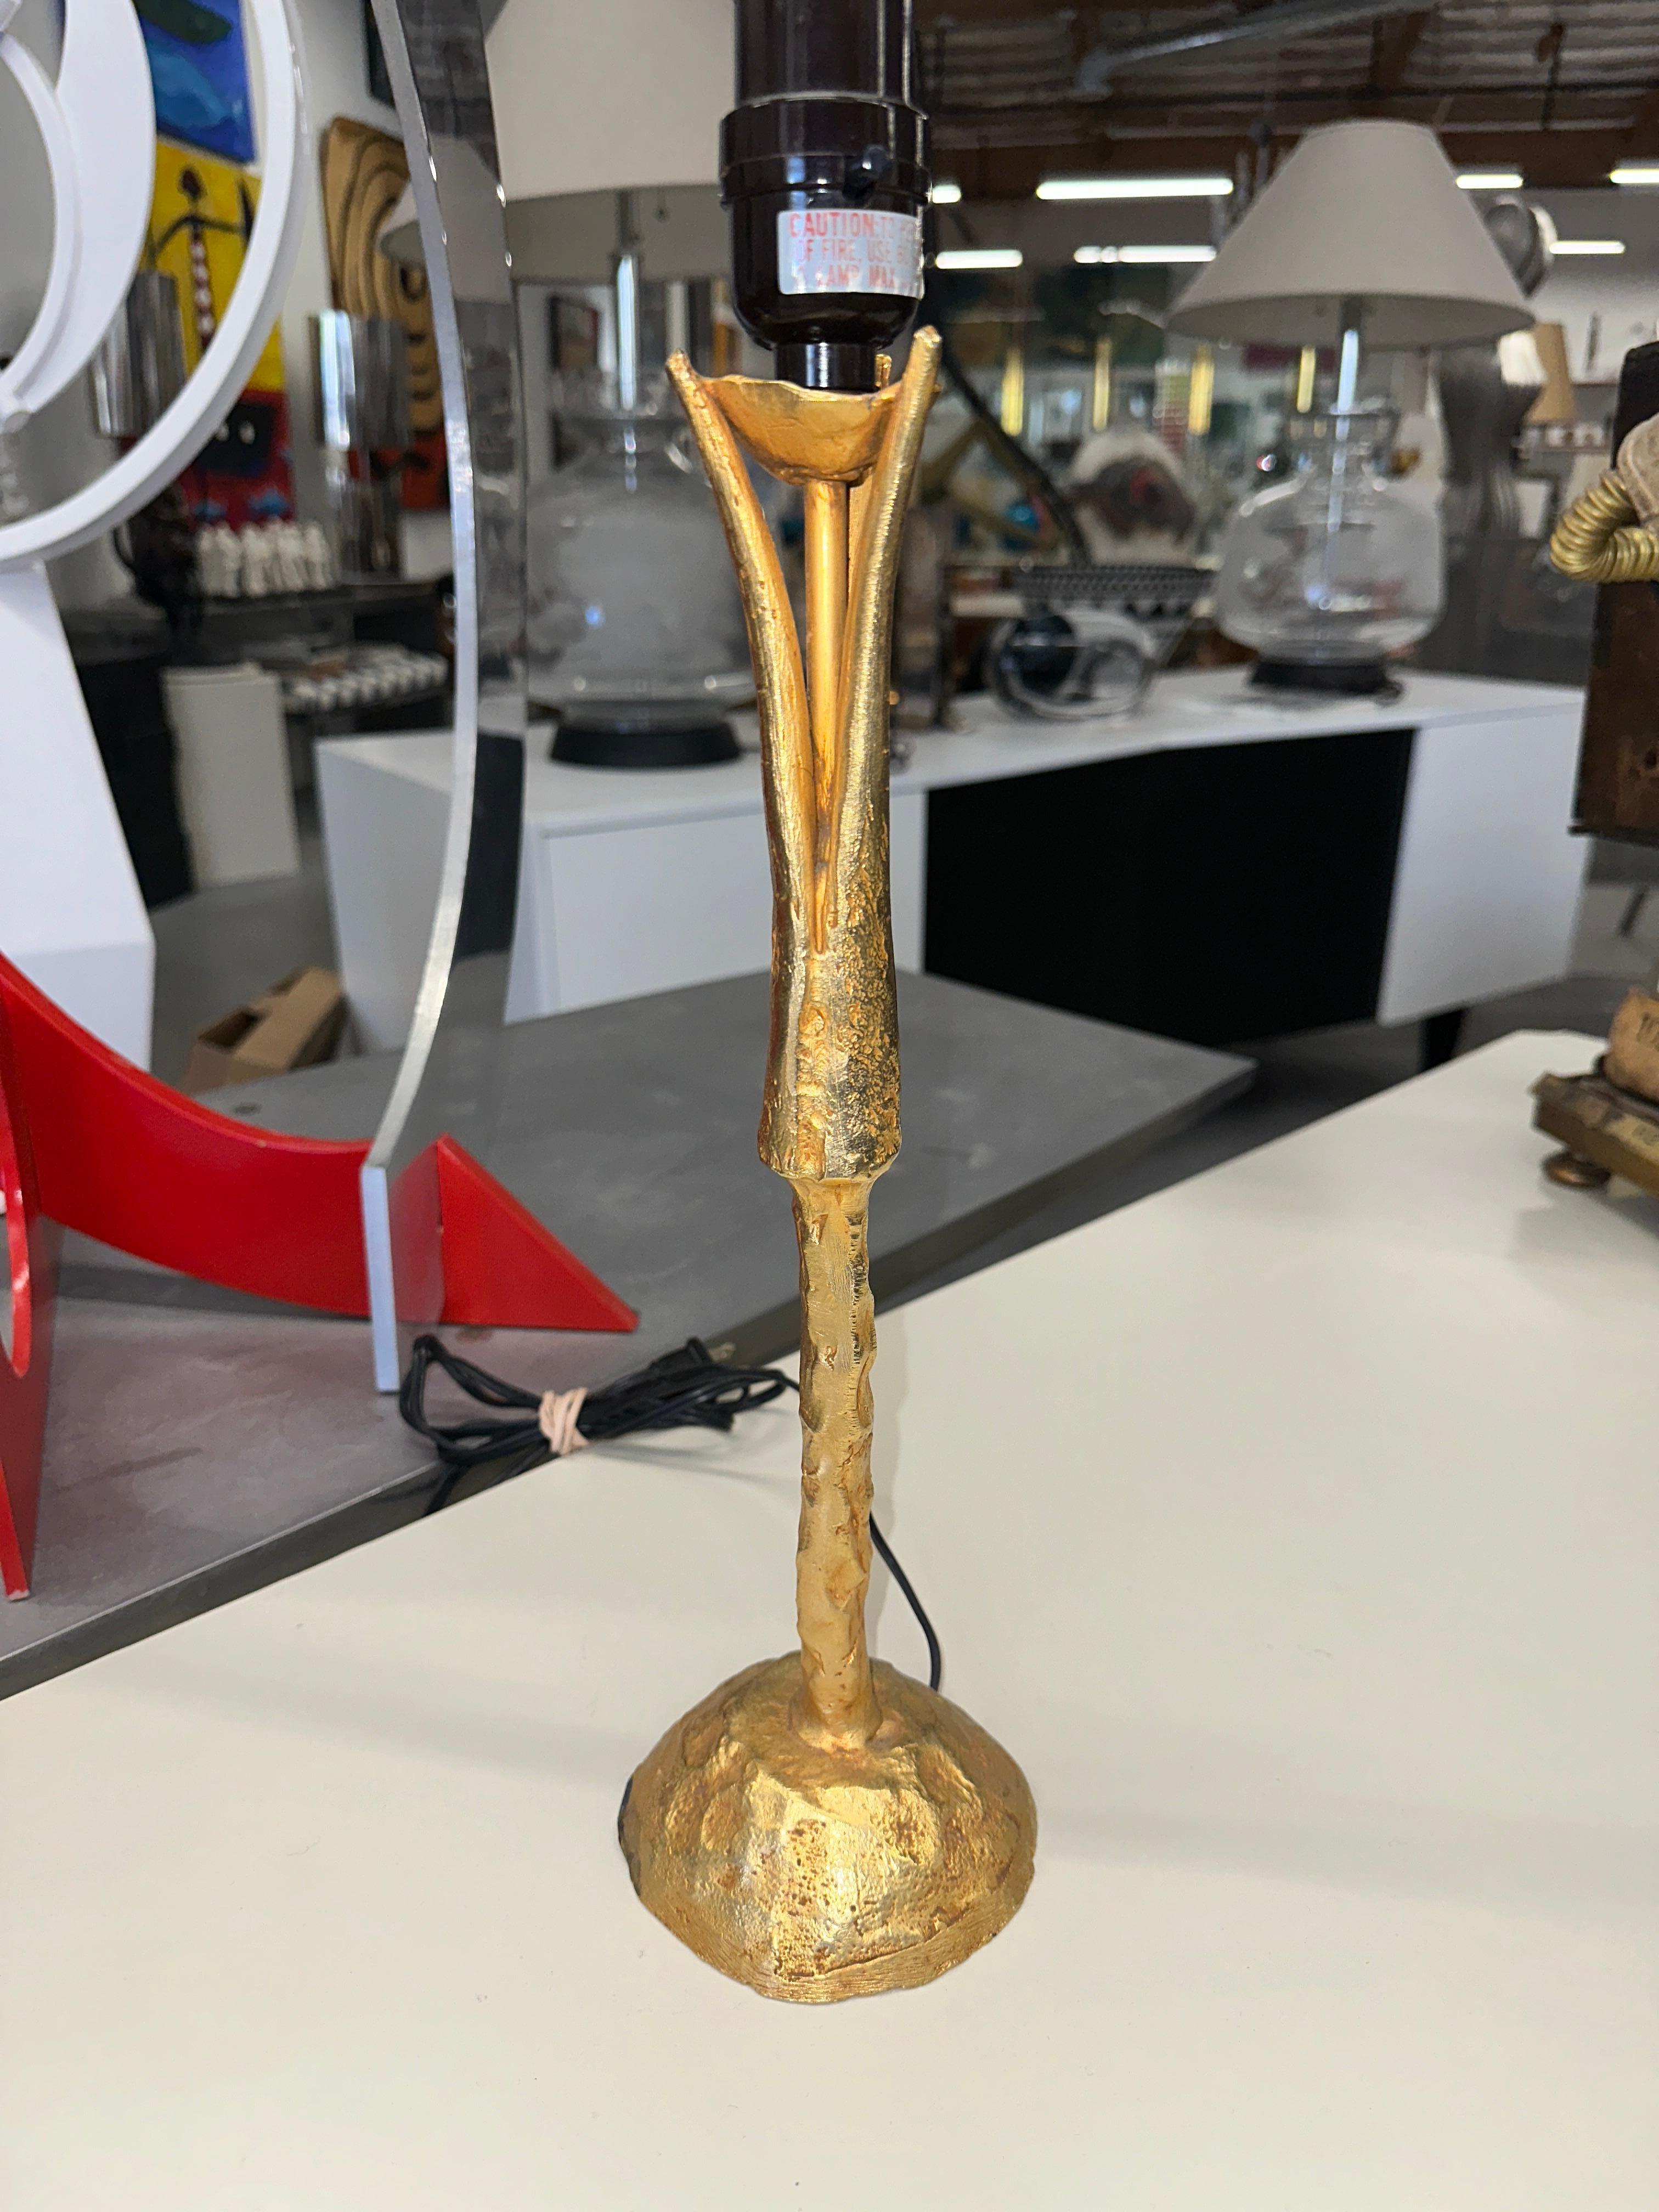 Magnifique lampe de table en métal doré conçue par le célèbre céramiste et sculpteur Pierre Casenove pour la société française Fondica. Livré avec un joli abat-jour à clipser. Les lampes datent de la fin des années 1990 ou du début des années 2000.